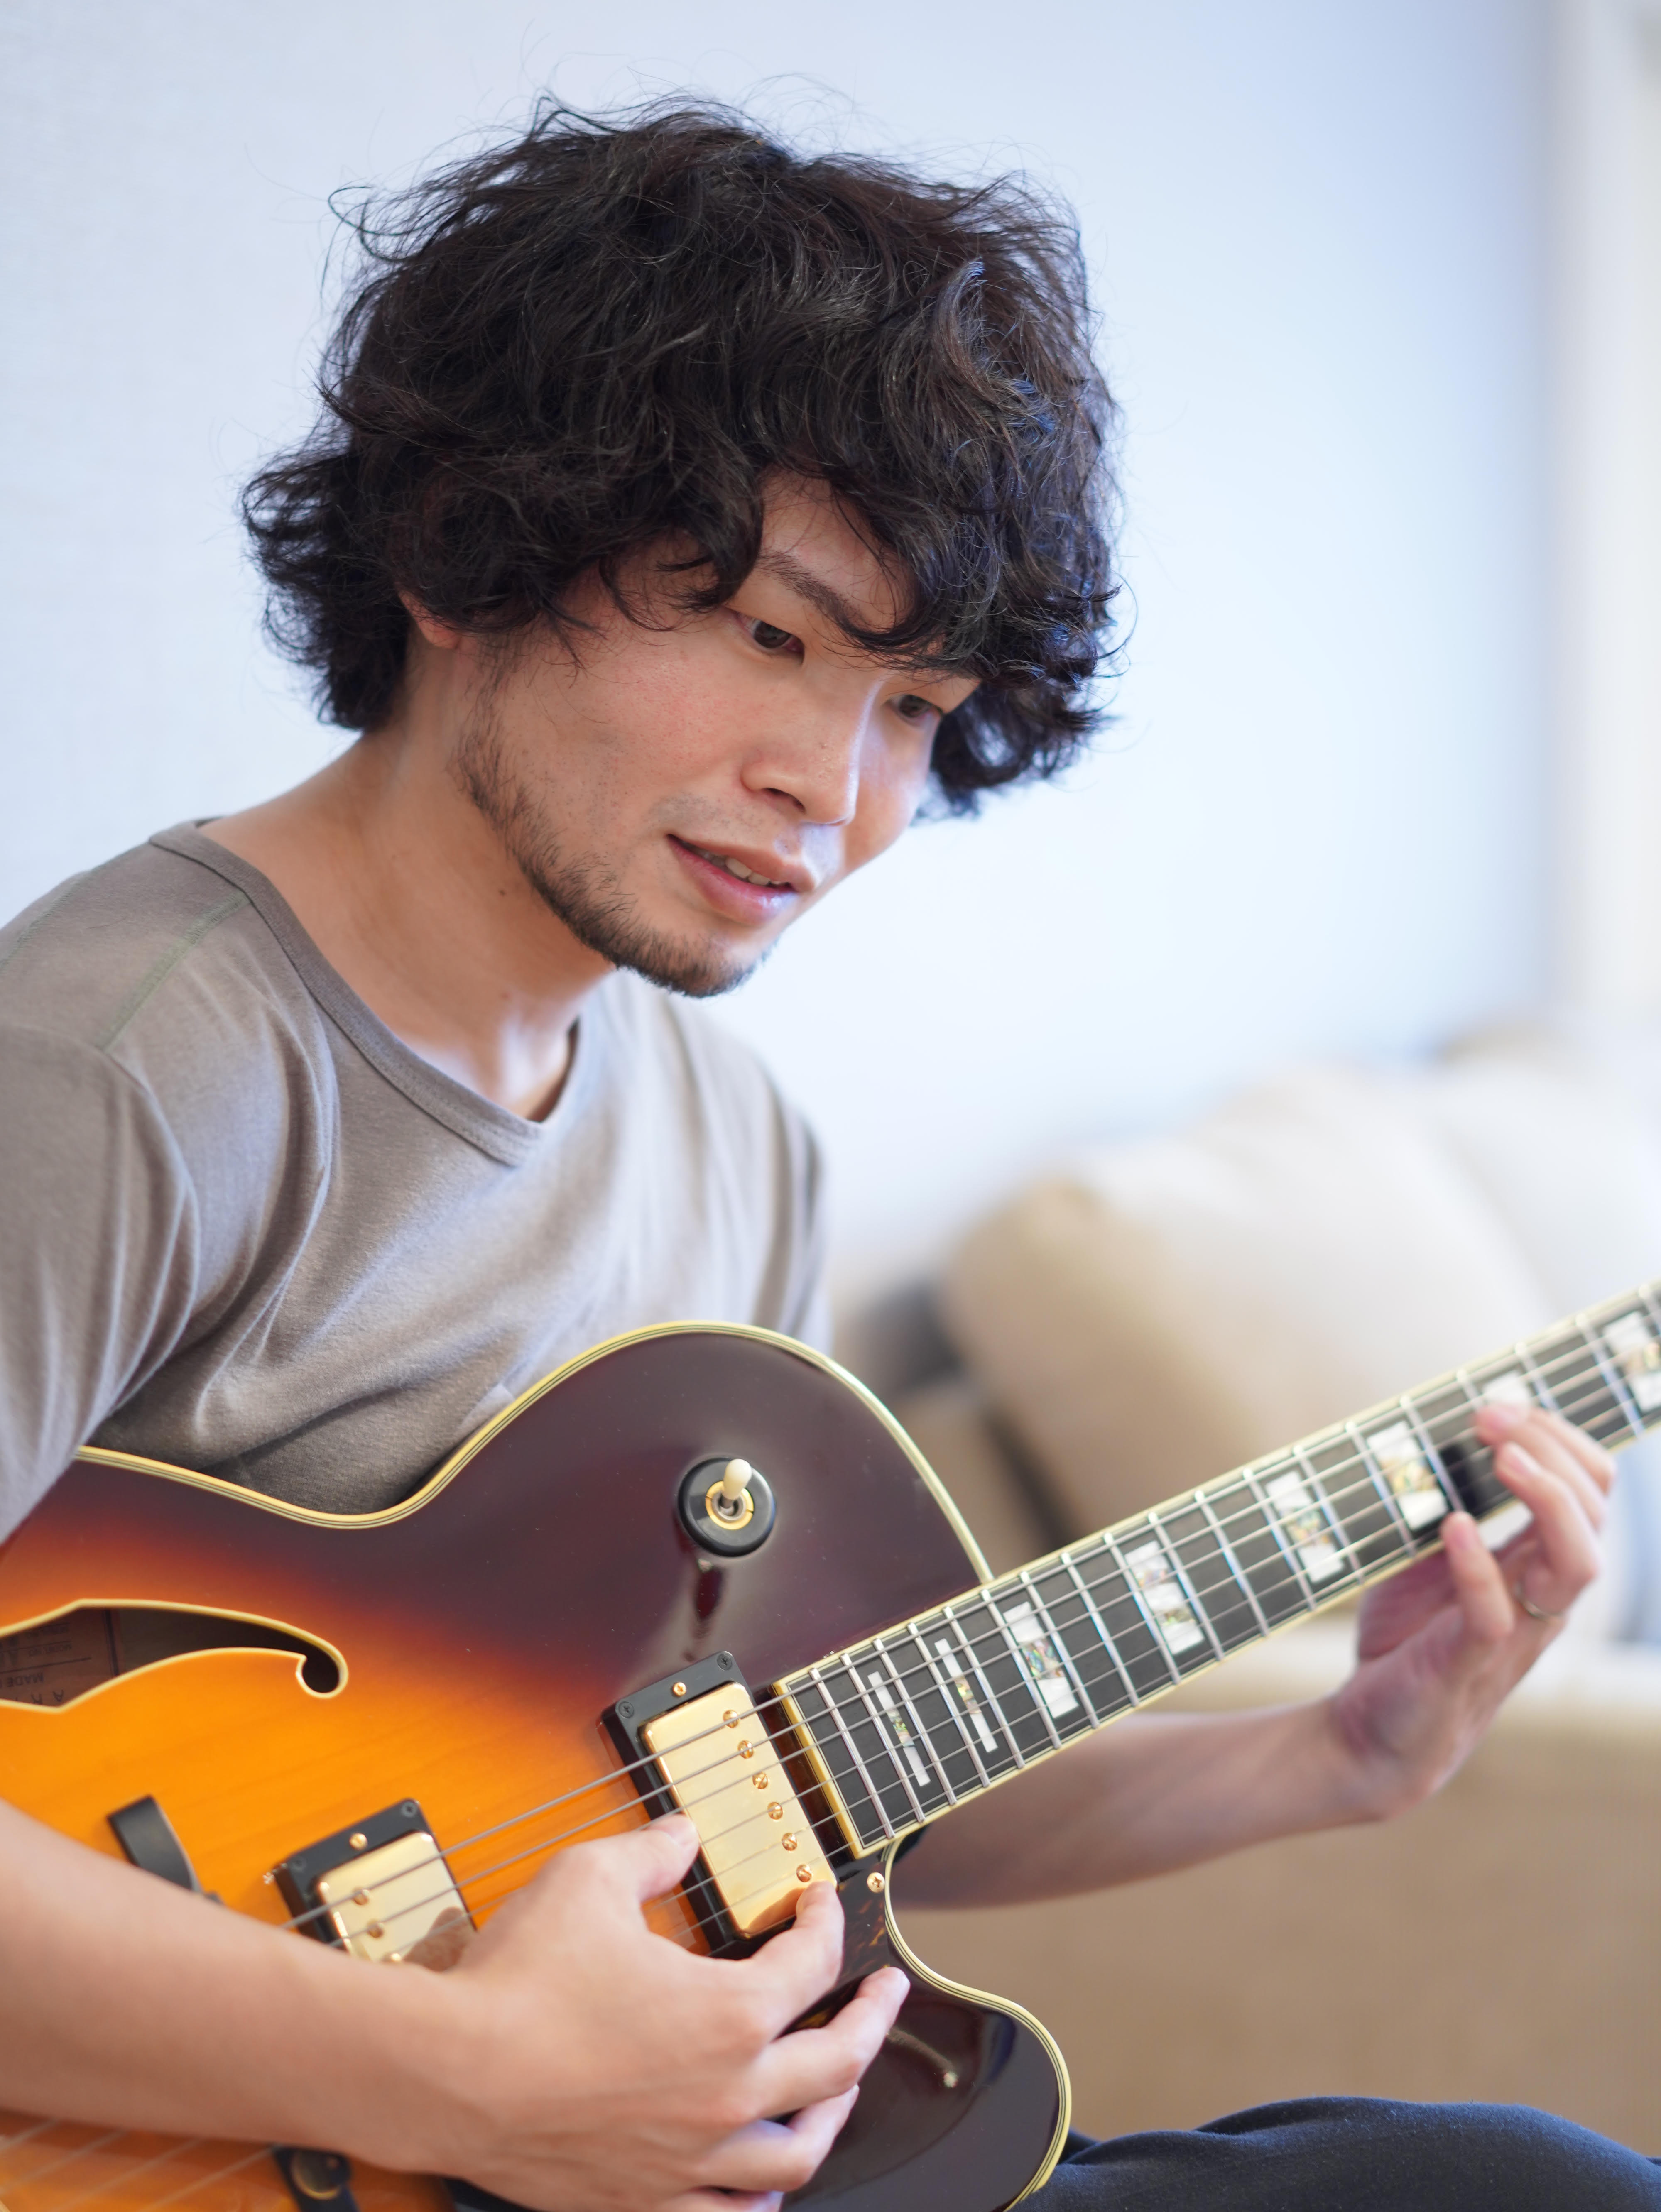 講師プロフィール 横浜生まれ、東京育ち。13歳でギターを始める。大学在学中はプロギタリストに師事しジャズを学ぶ傍ら、シンガーのサポートワーク等を行う。大学卒業後は自身の参加するバンドでのライブ、制作活動を都内を中心に行う。現在はバンド活動に加えてソロアーティストとしても楽曲リリースを行いながら、ギタ […]